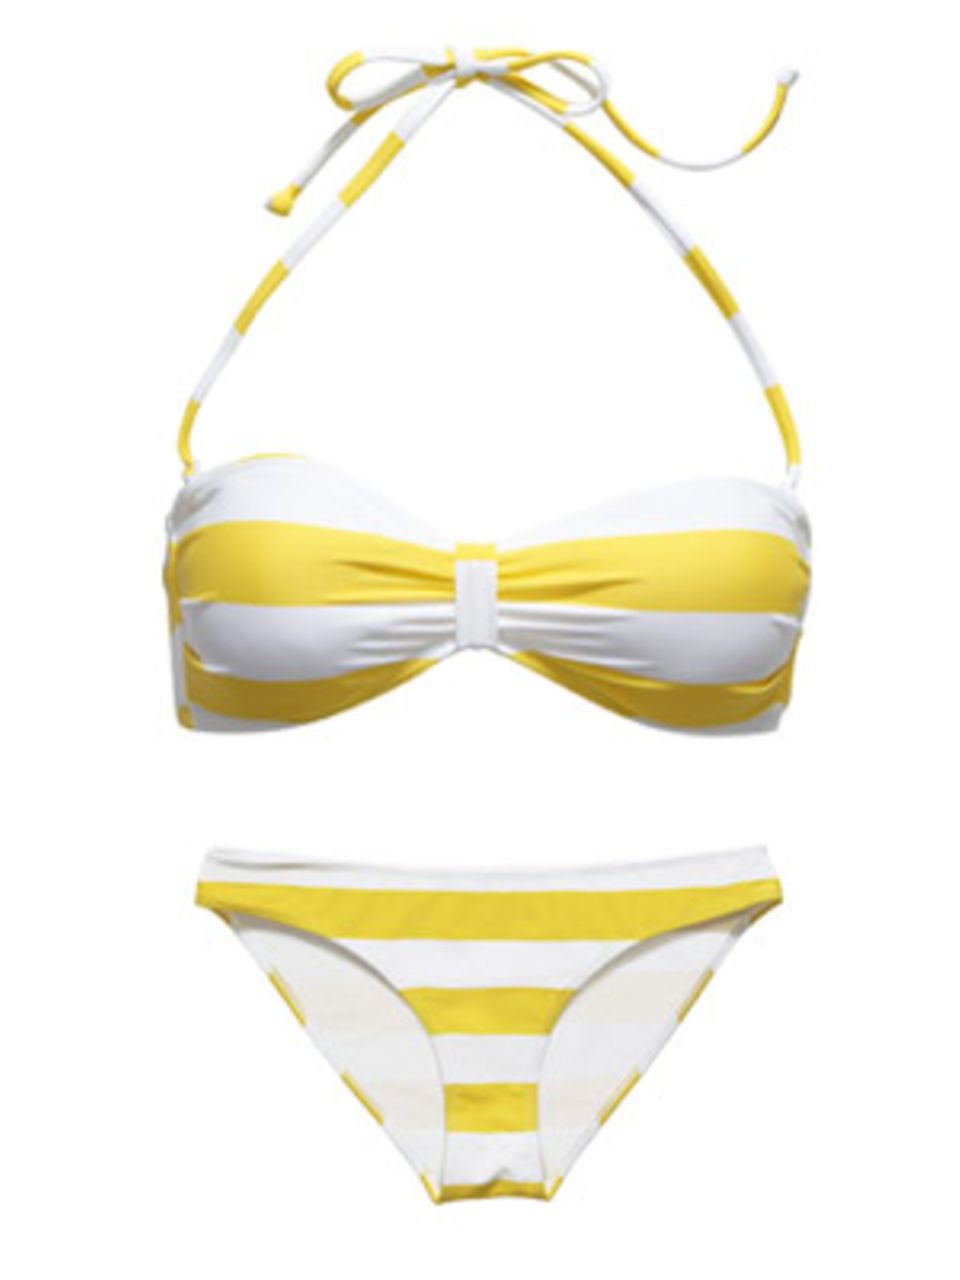 Bandeau-Bikinitop und Hipster mit gelben Streifen. Beides von H&M, je um 10 Euro.